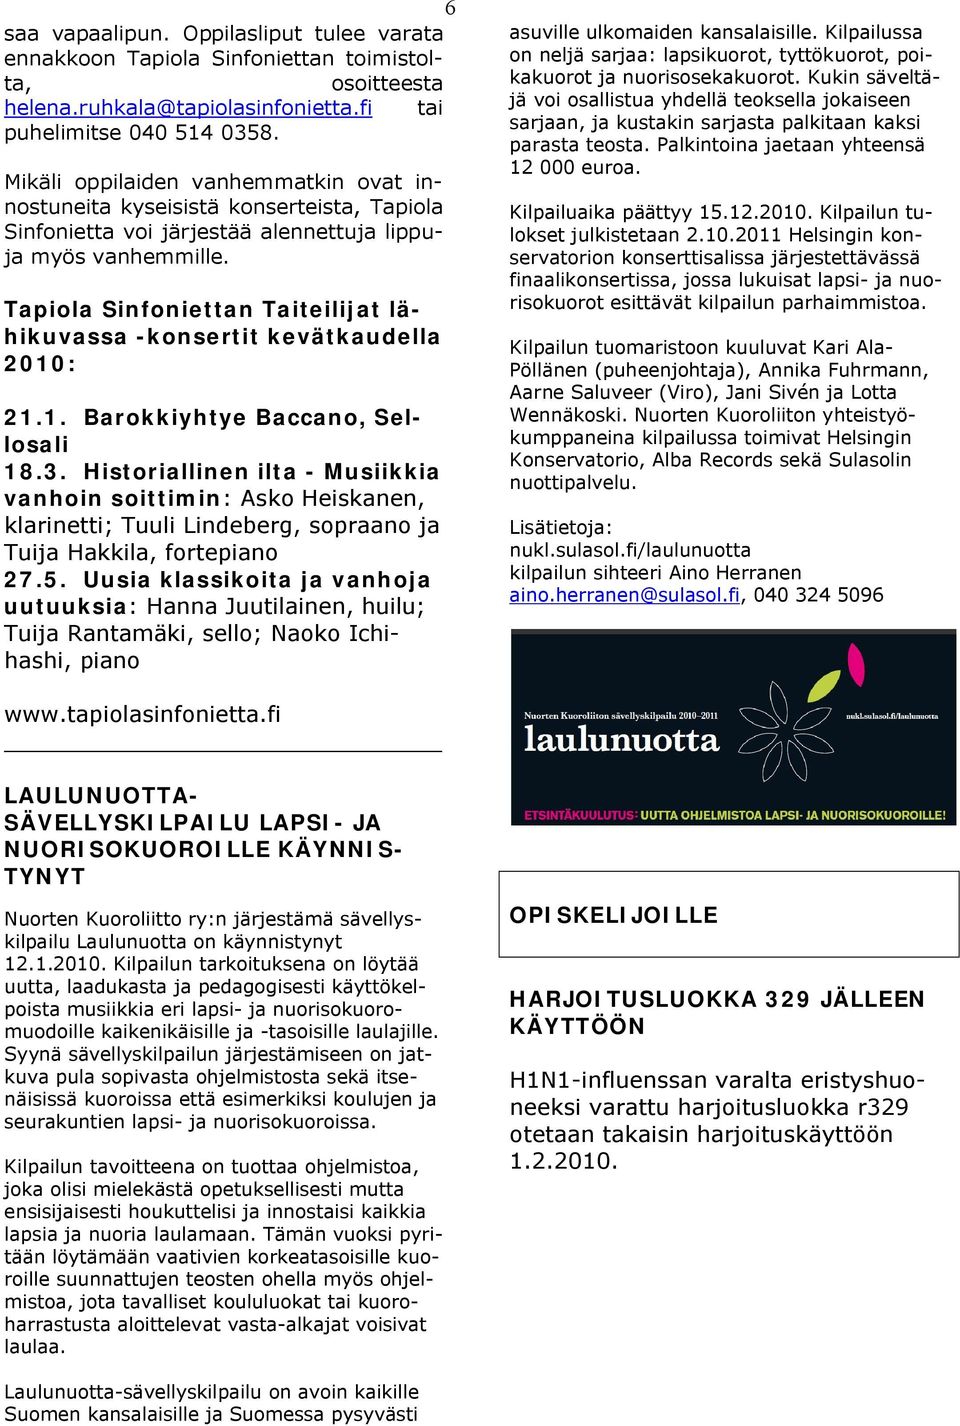 Tapiola Sinfoniettan Taiteilijat lähikuvassa -konsertit kevätkaudella 2010: 21.1. Barokkiyhtye Baccano, Sellosali 18.3.